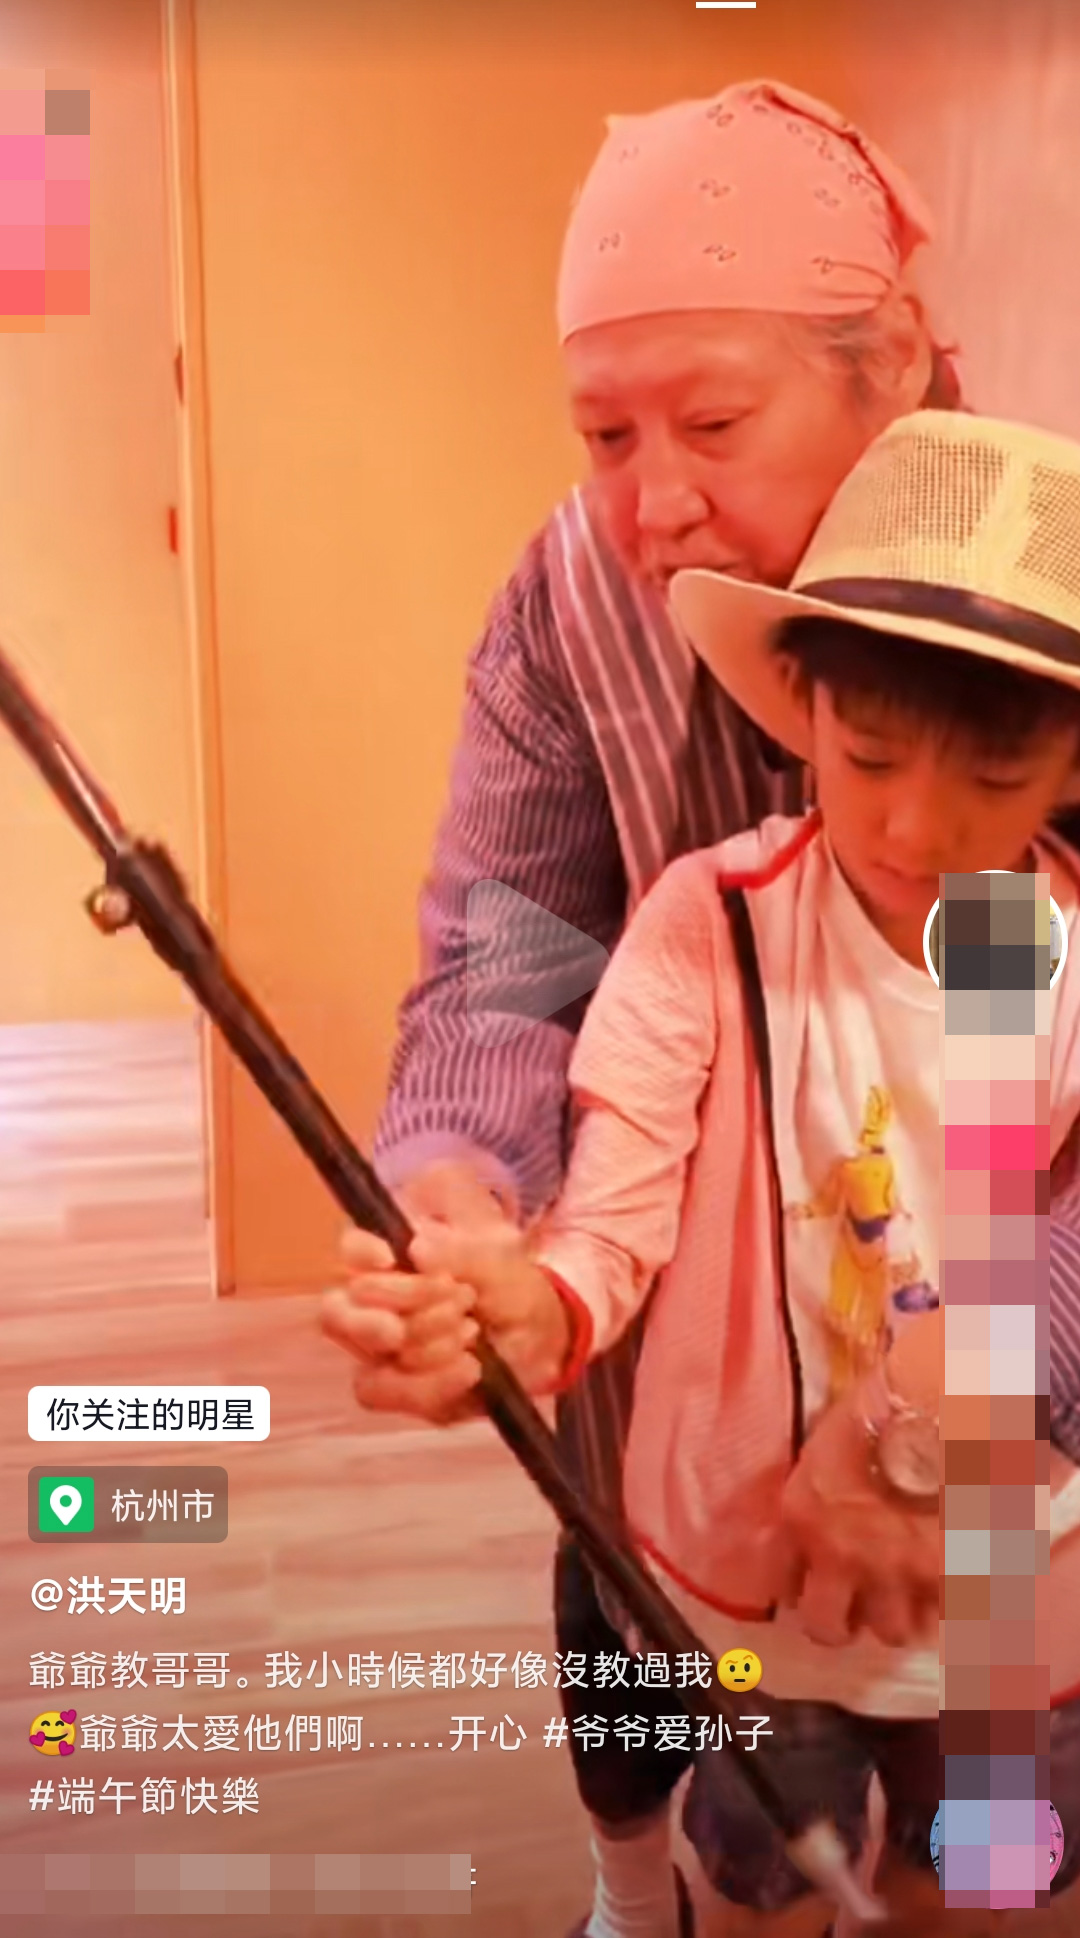 洪天明发文透露，爸爸洪金宝正在教长子耍棍，并表示“我小时候都好像没教过我，爷爷太爱他们啊。”